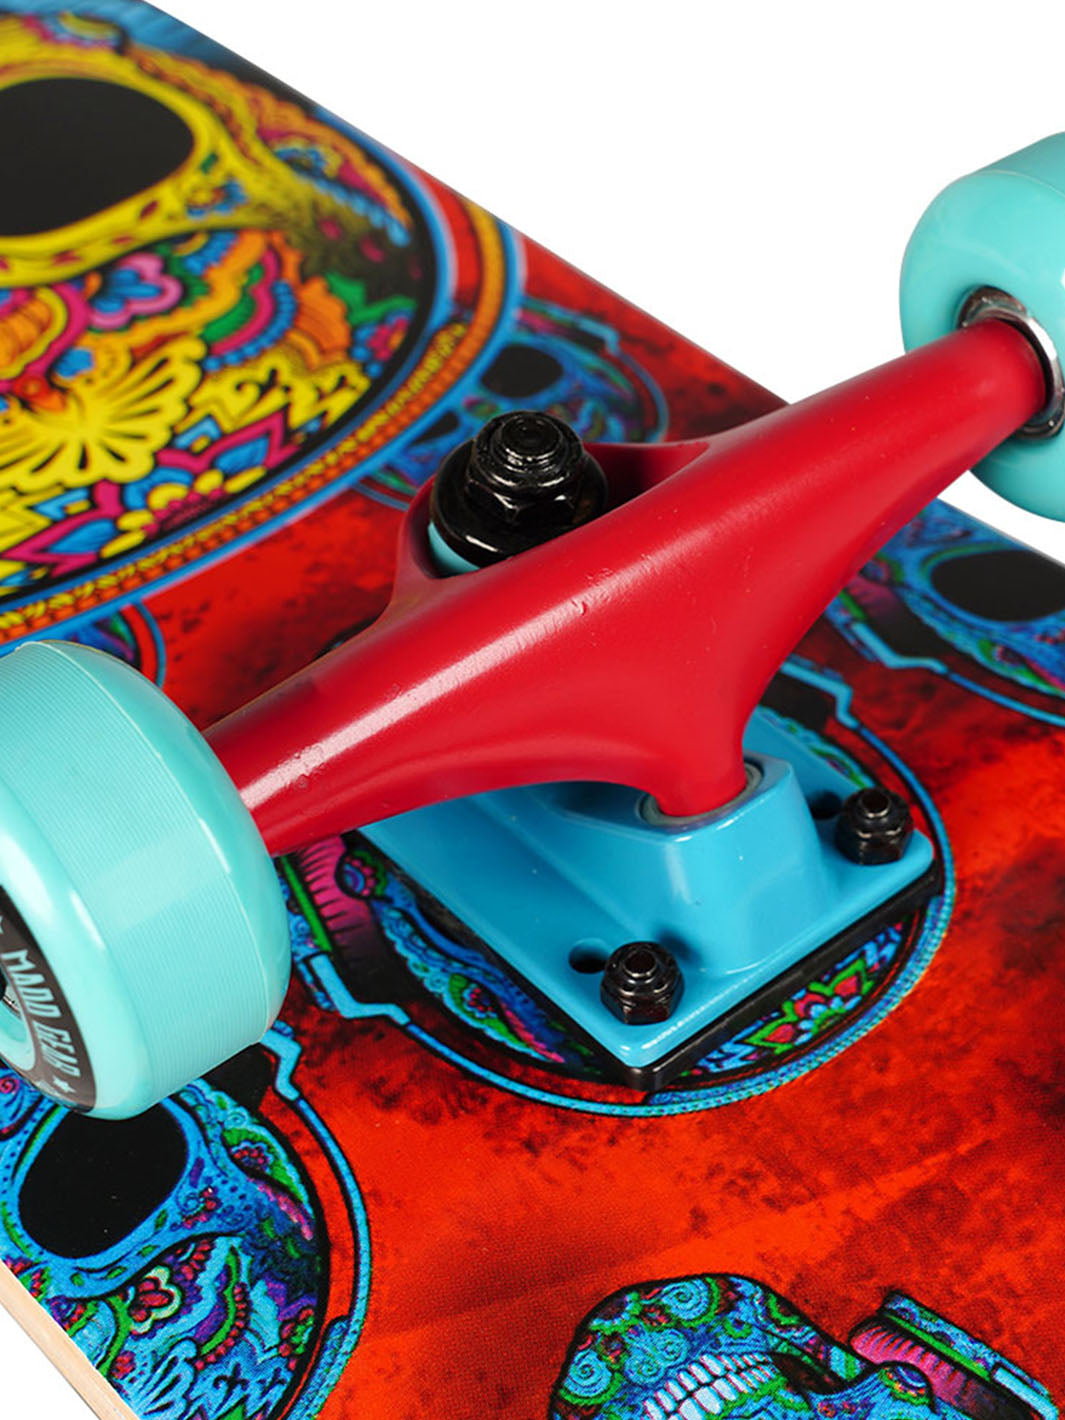 madd gear skateboard complete alloy trucks red blue wheels bearings